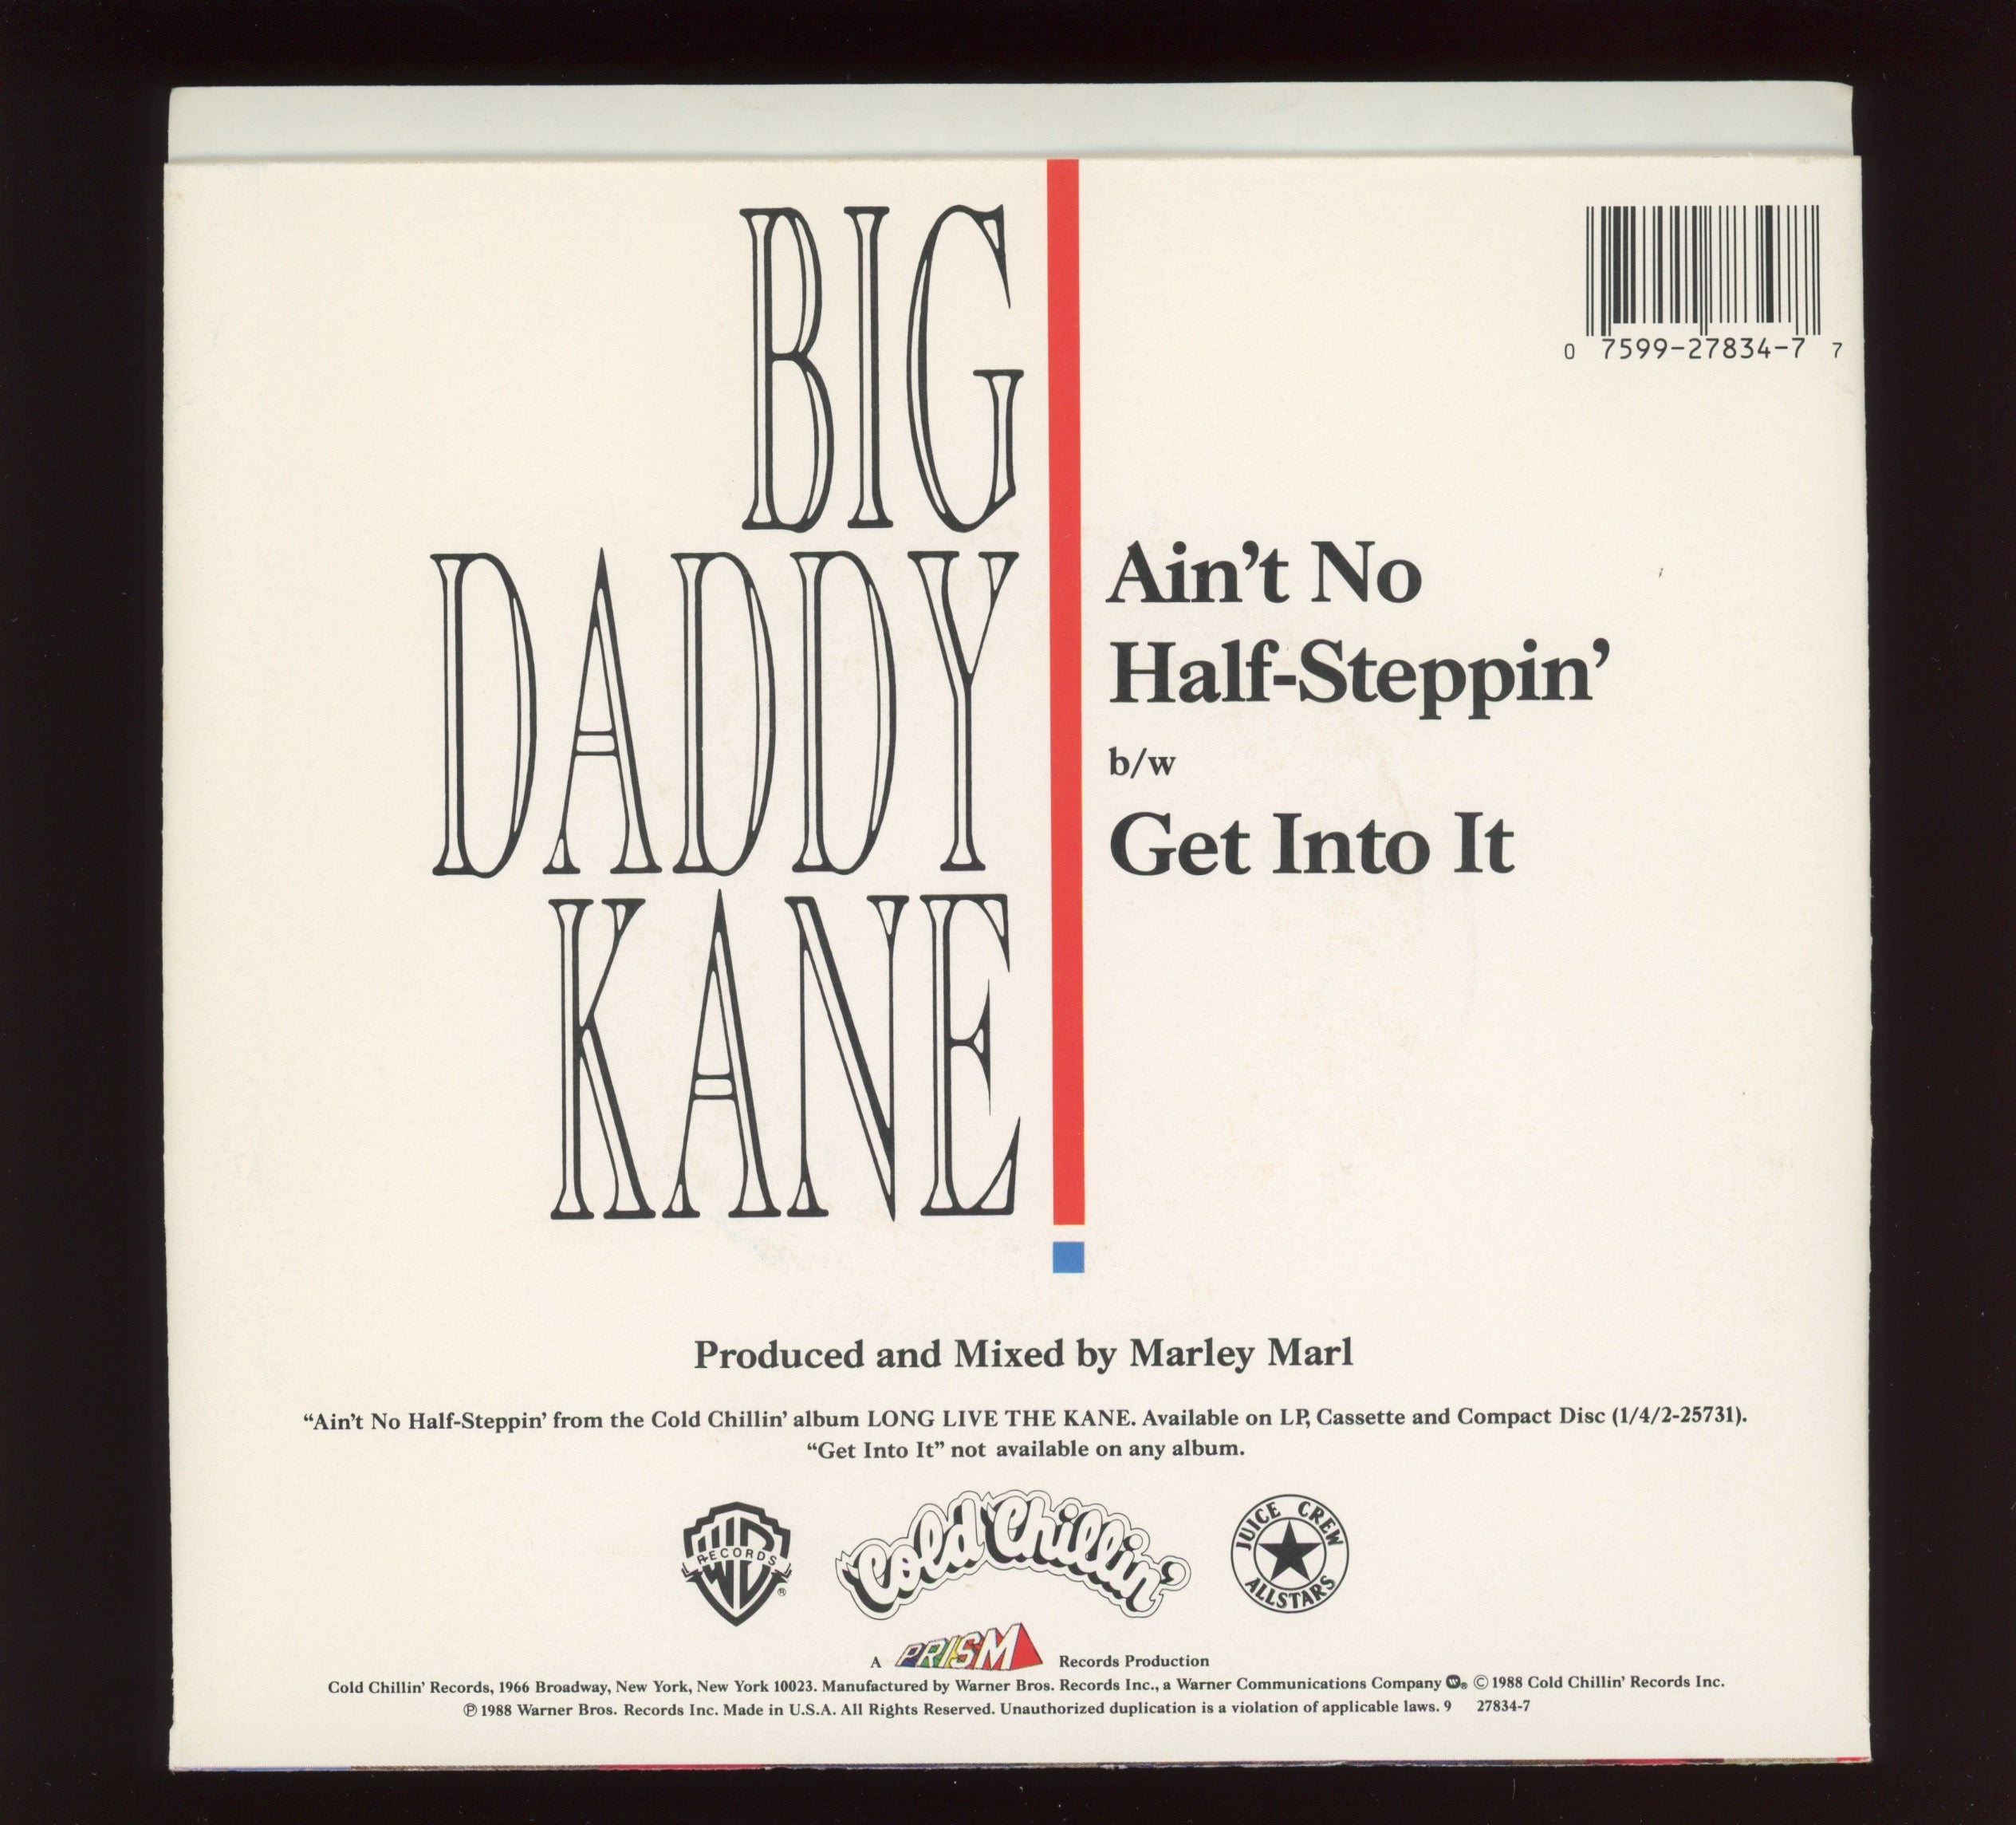 Big daddy kane discography